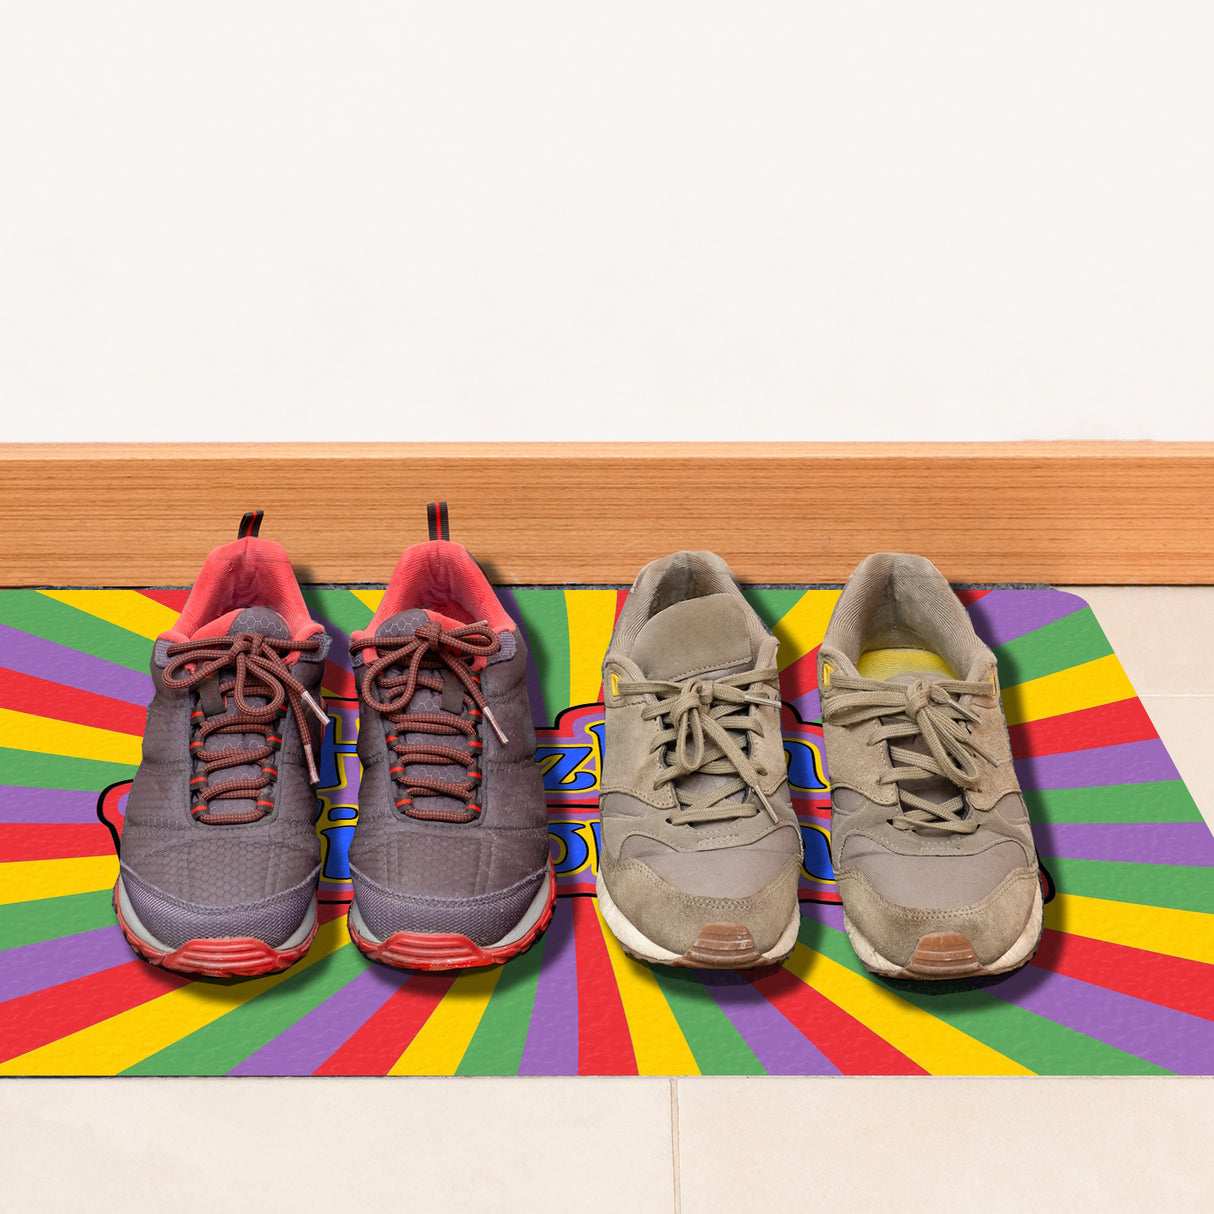 Farbenfrohe Herzlich Willkommen Fußmatte in 35x50 cm ohne Rand in bunten Süßigkeitenfarben